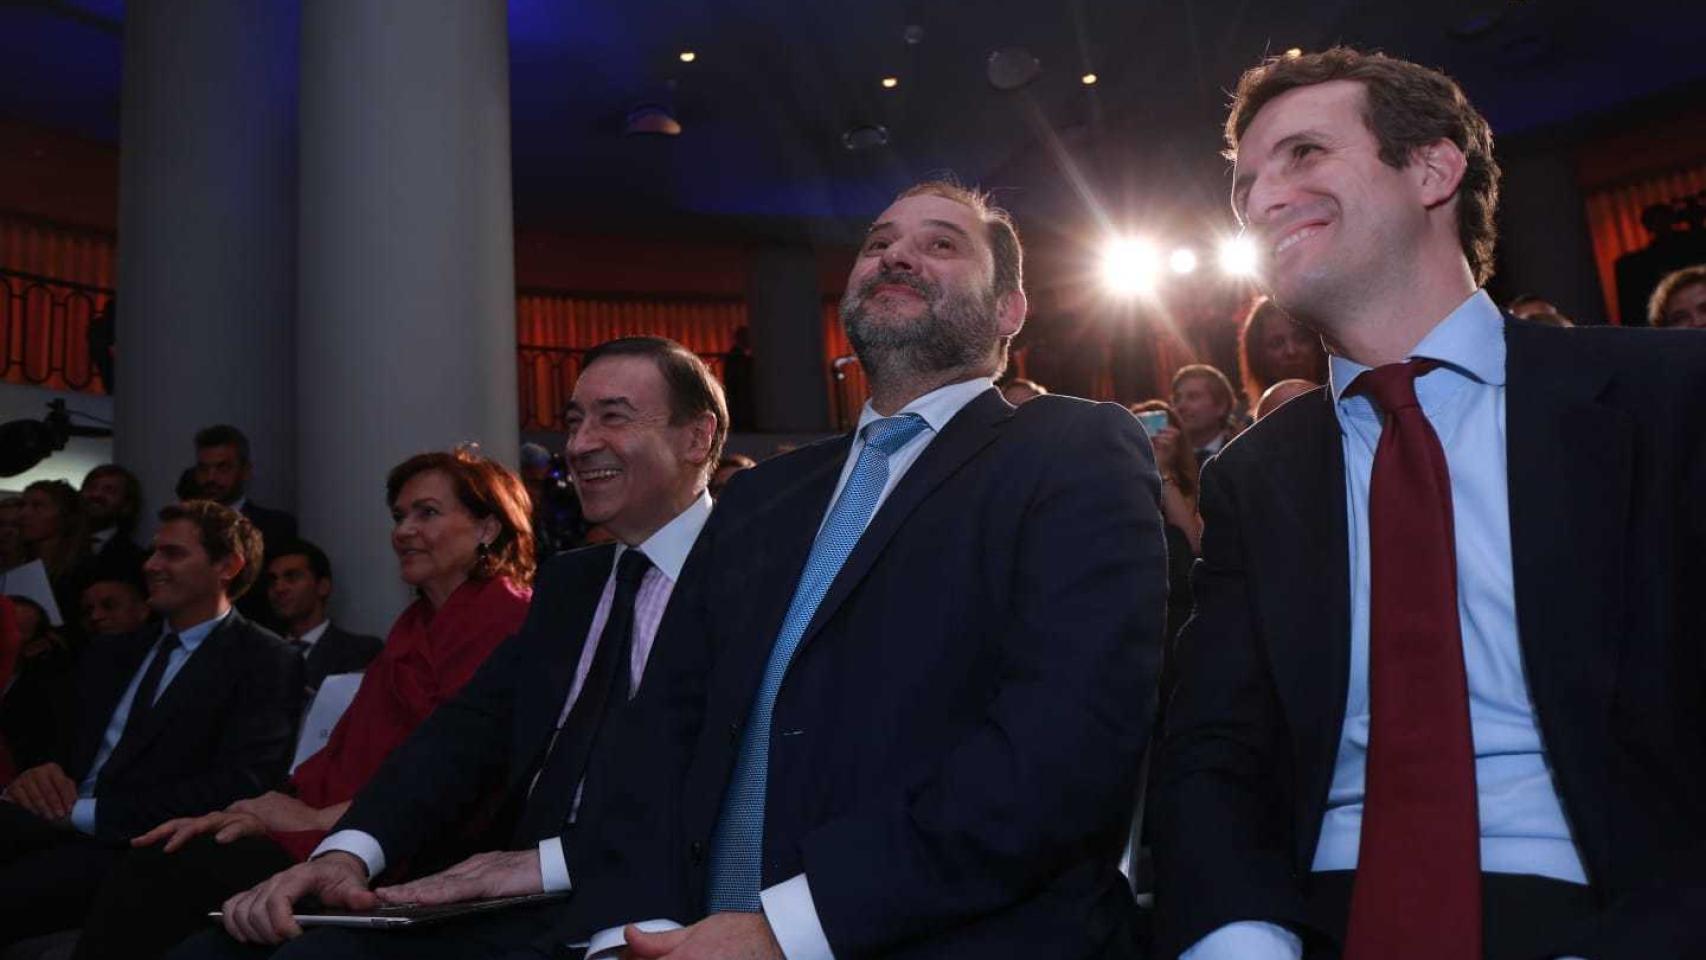 De izquierda a derecha: Albert Rivera, de Ciudadanos; Carmen Calvo, vicepresidenta del Gobierno; Pedro J. Ramírez, director de EL ESPAÑOL; José Luis Ábalos, ministro de Fomento; y Pablo Casado, líder del PP.